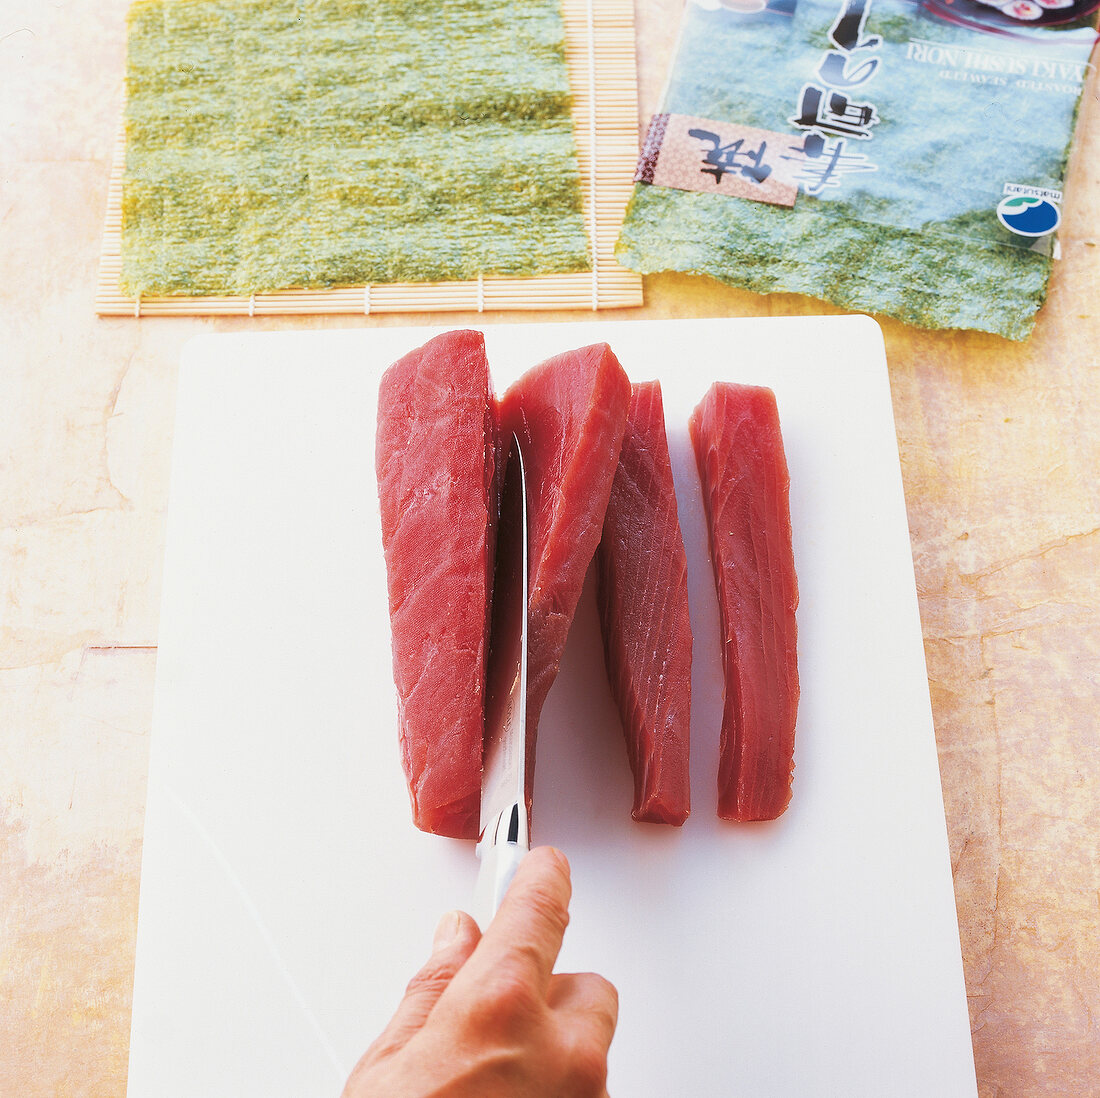 TBN Seafood - Thunfisch Sashimi Step 1: Streifen schneiden